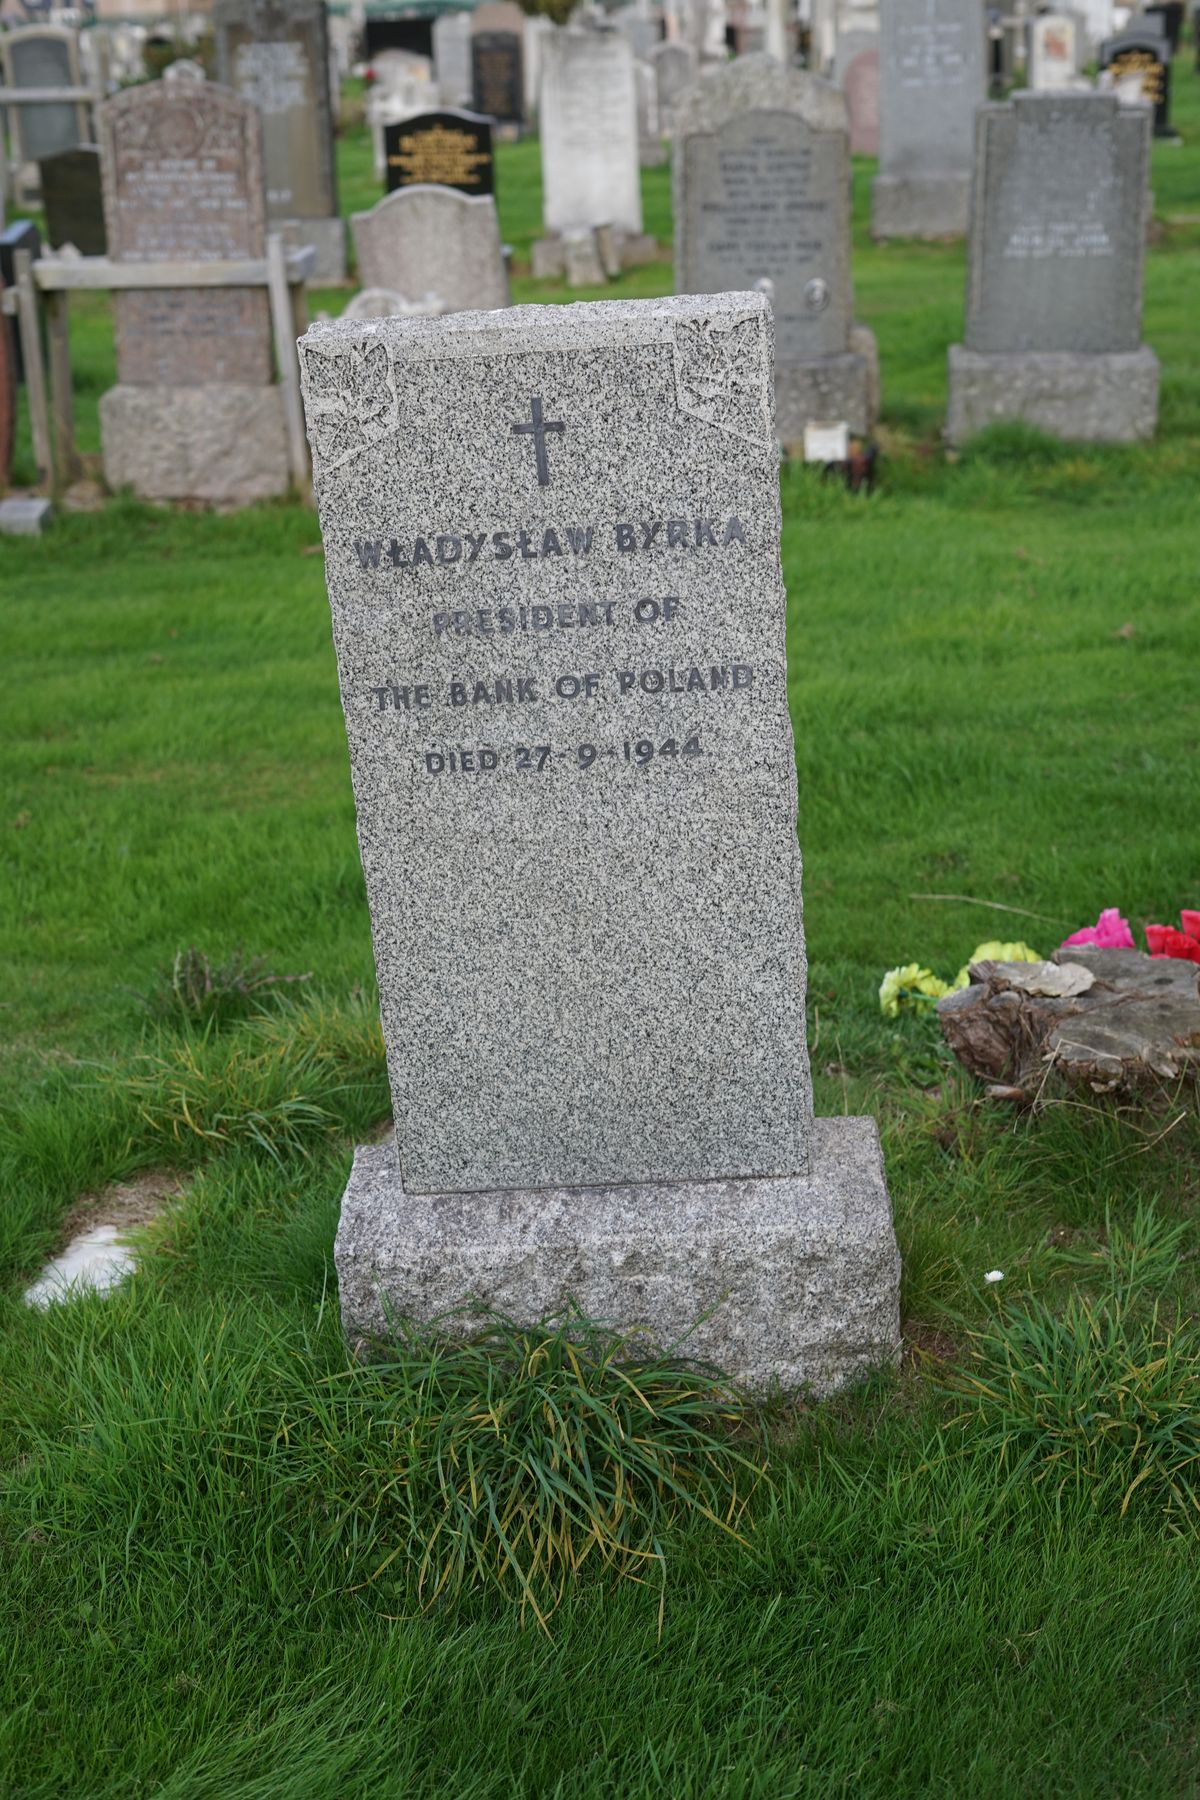 Tombstone of Władysław Byrka